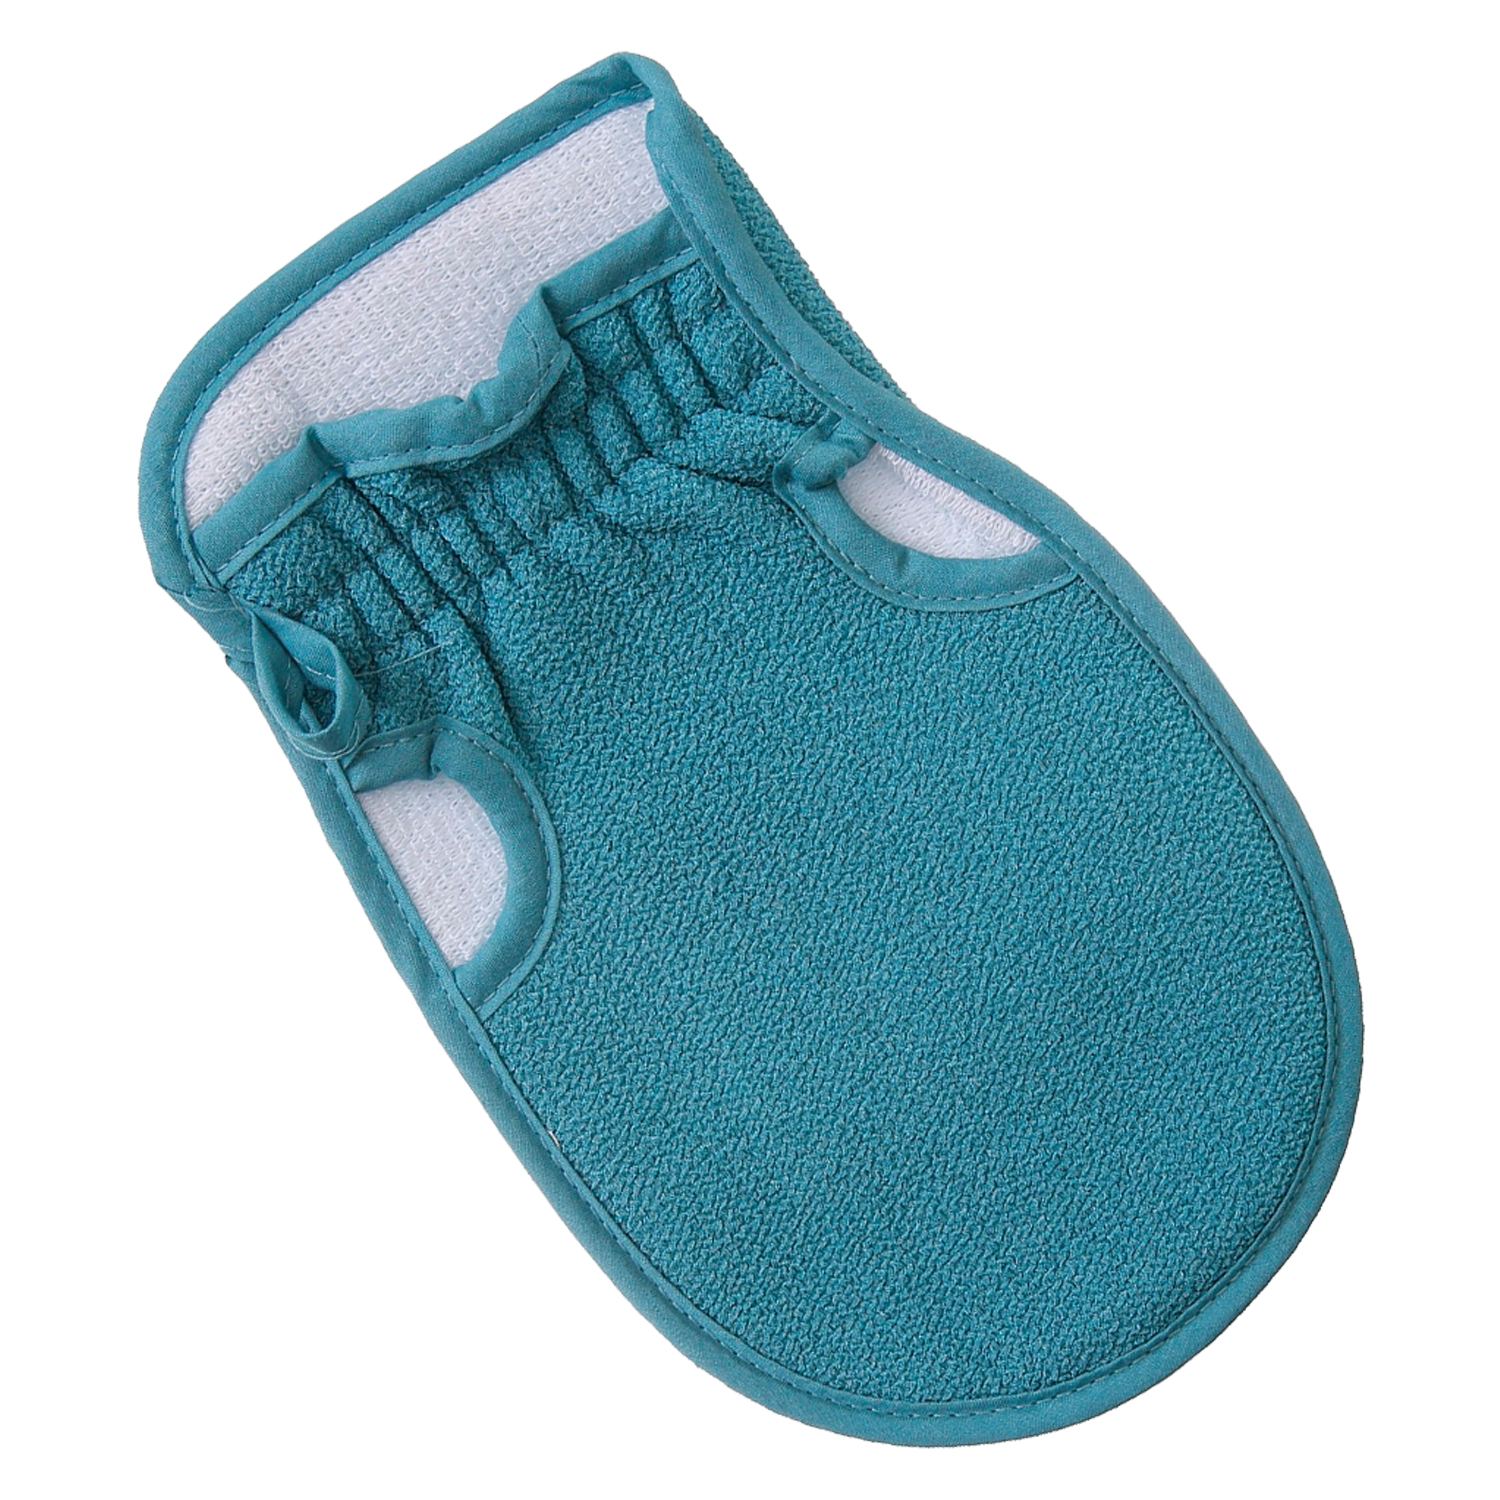 Мочалка-рукавица, VenusShape, цвет серо-голубой, 23х14 см мочалка банная рукавица букле